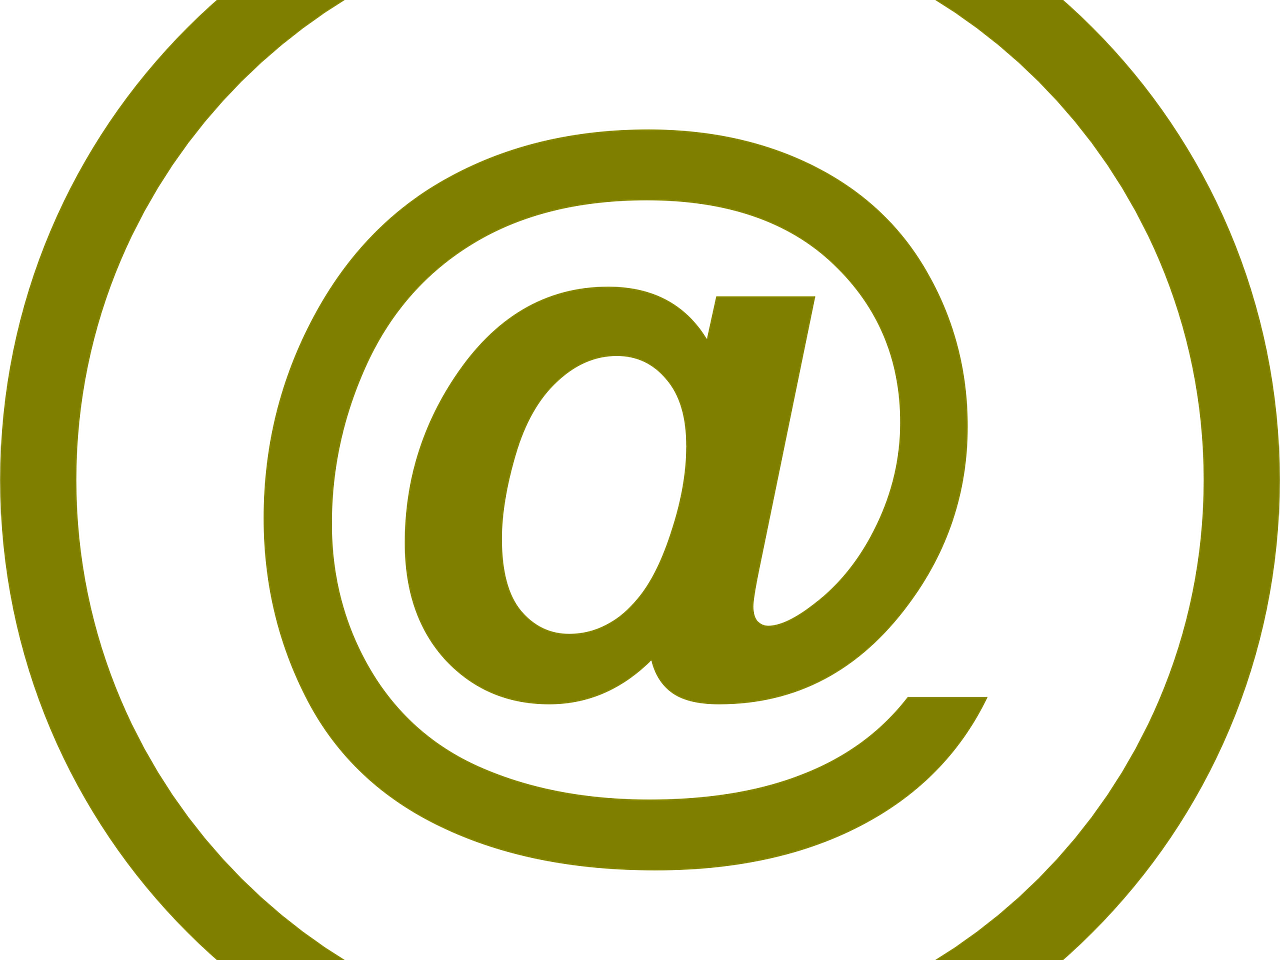 Aktuelle Mitteilung: Erreichbarkeit der Schule per E-Mail (c) www.pixabay.com